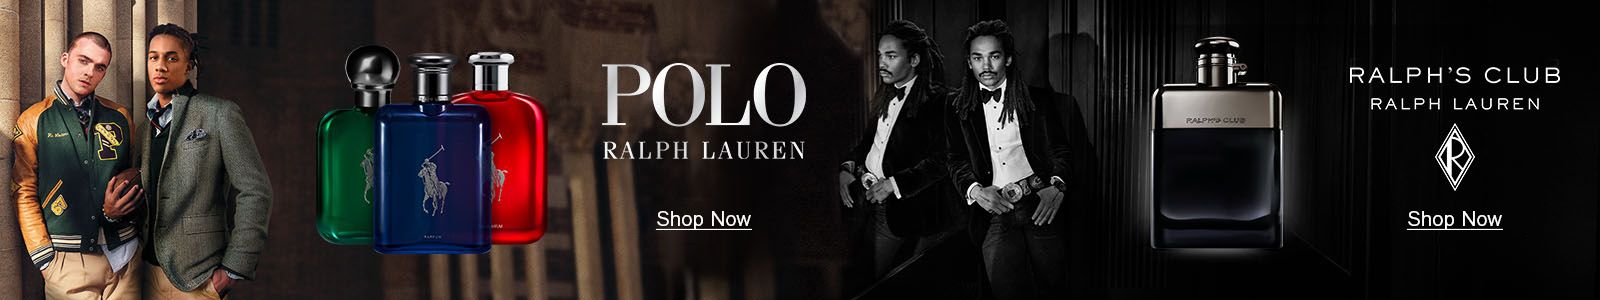 Polo, Ralph Lauren, Ralph's Club Ralph Lauren